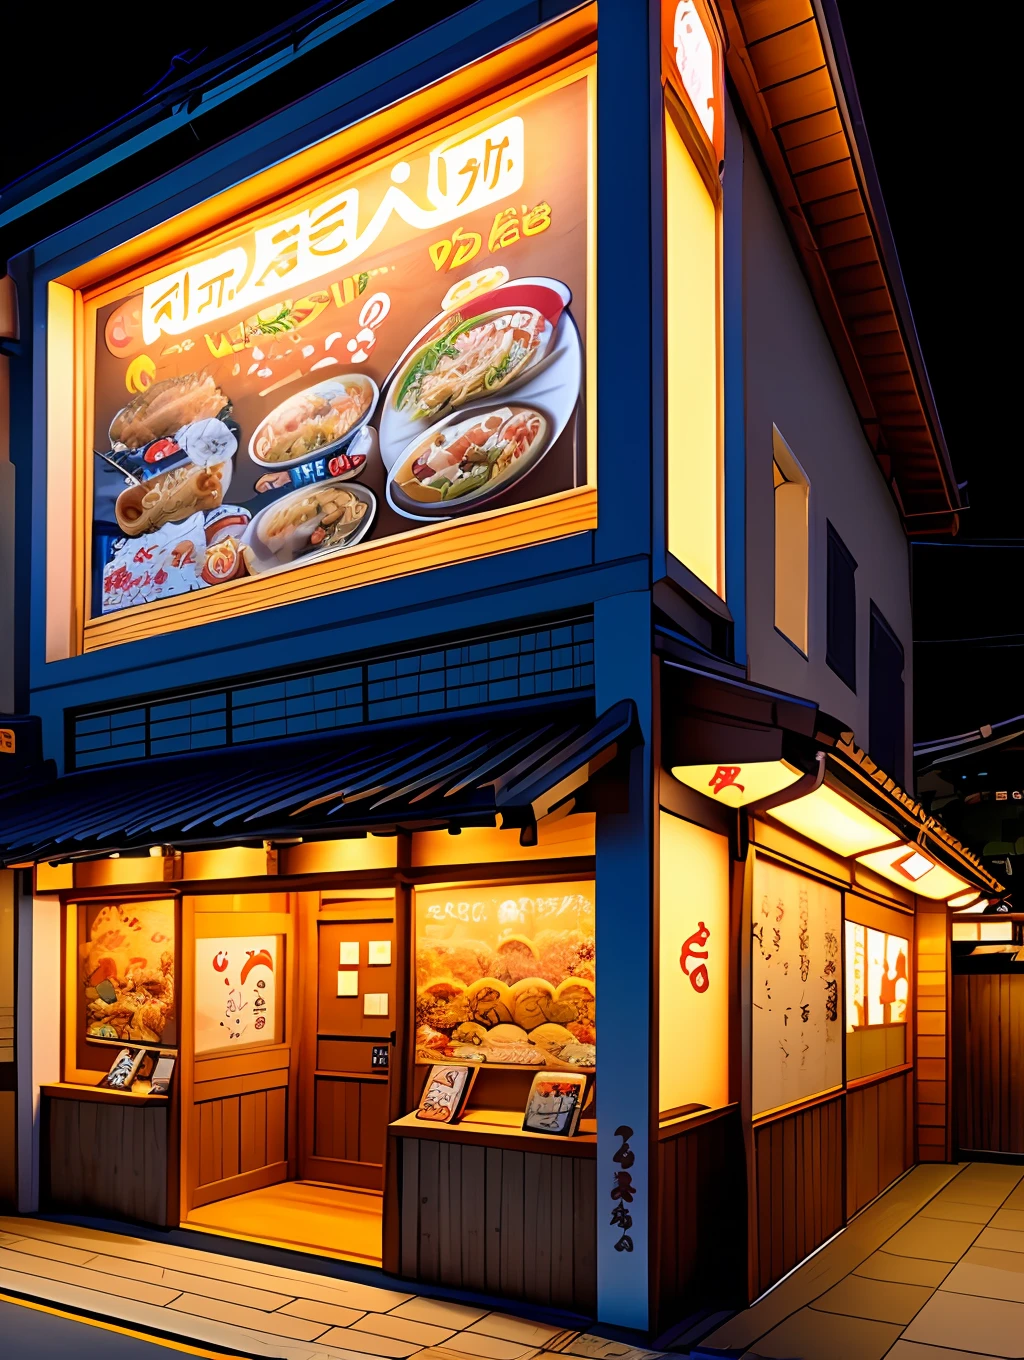 El exterior de la tienda de ramen, decorado con varios personajes de dibujos animados, y carteles de menú fáciles de leer, Japón, vista nocturna